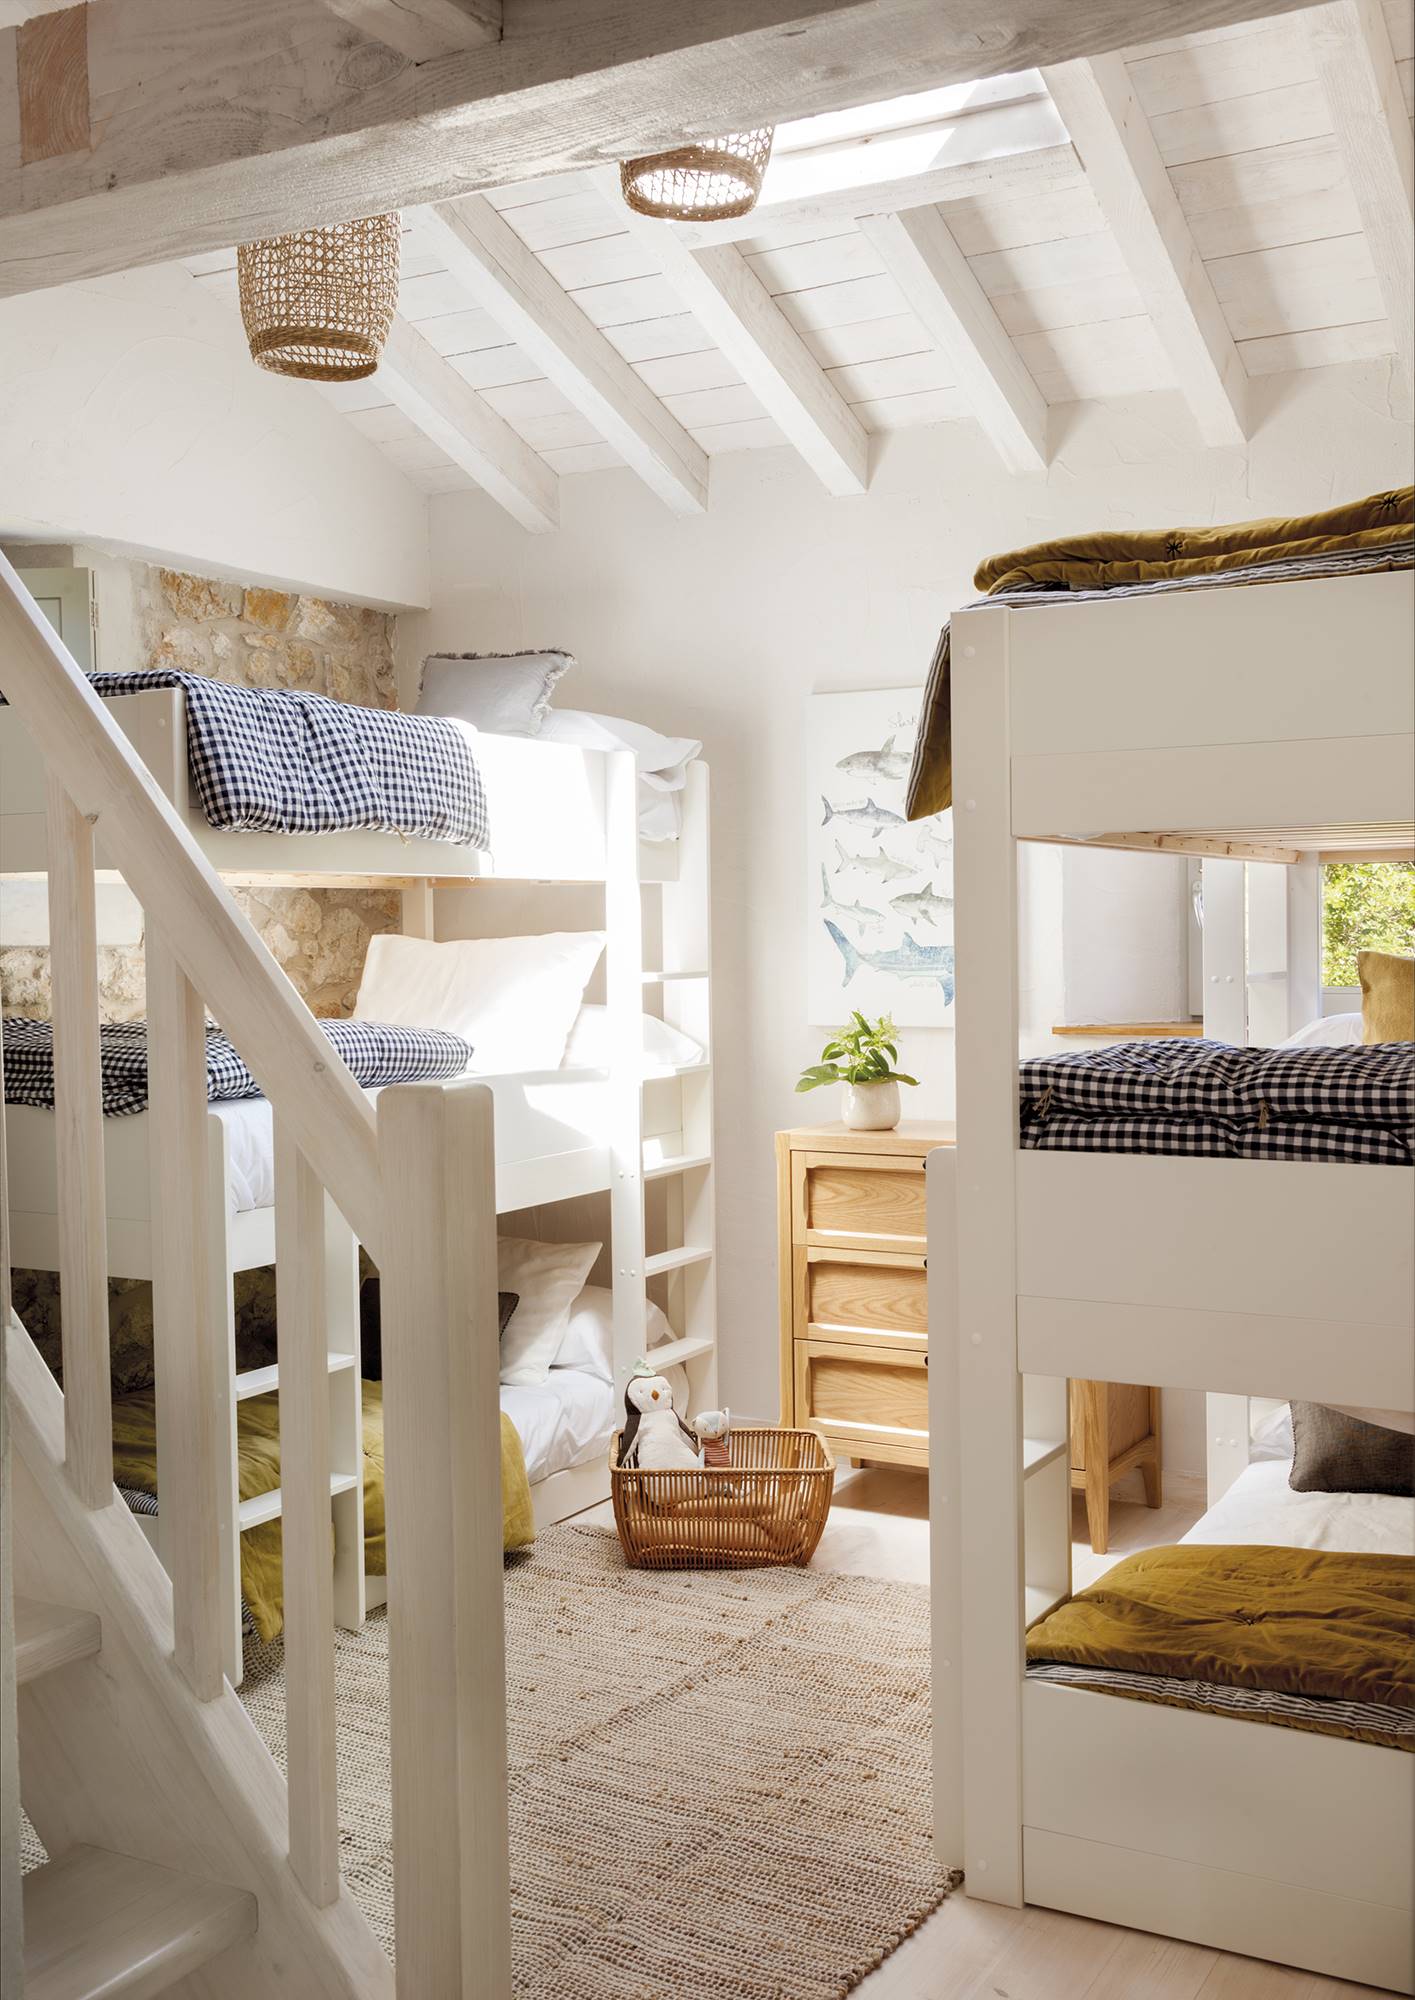 Dormitorio infantil de estilo rústico con literas.